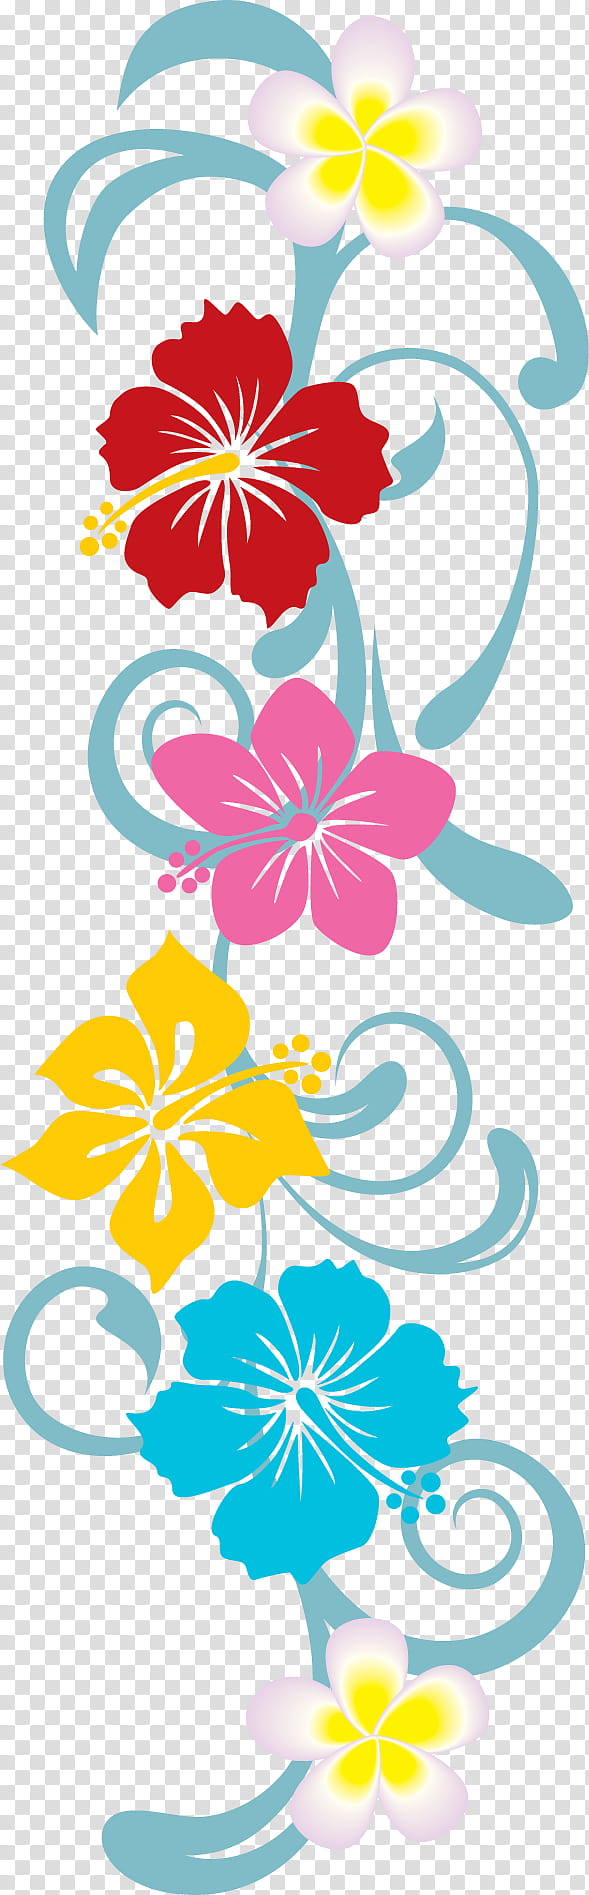 flower border flower background floral line, Plant, Hibiscus, Pedicel, Floral Design transparent background PNG clipart